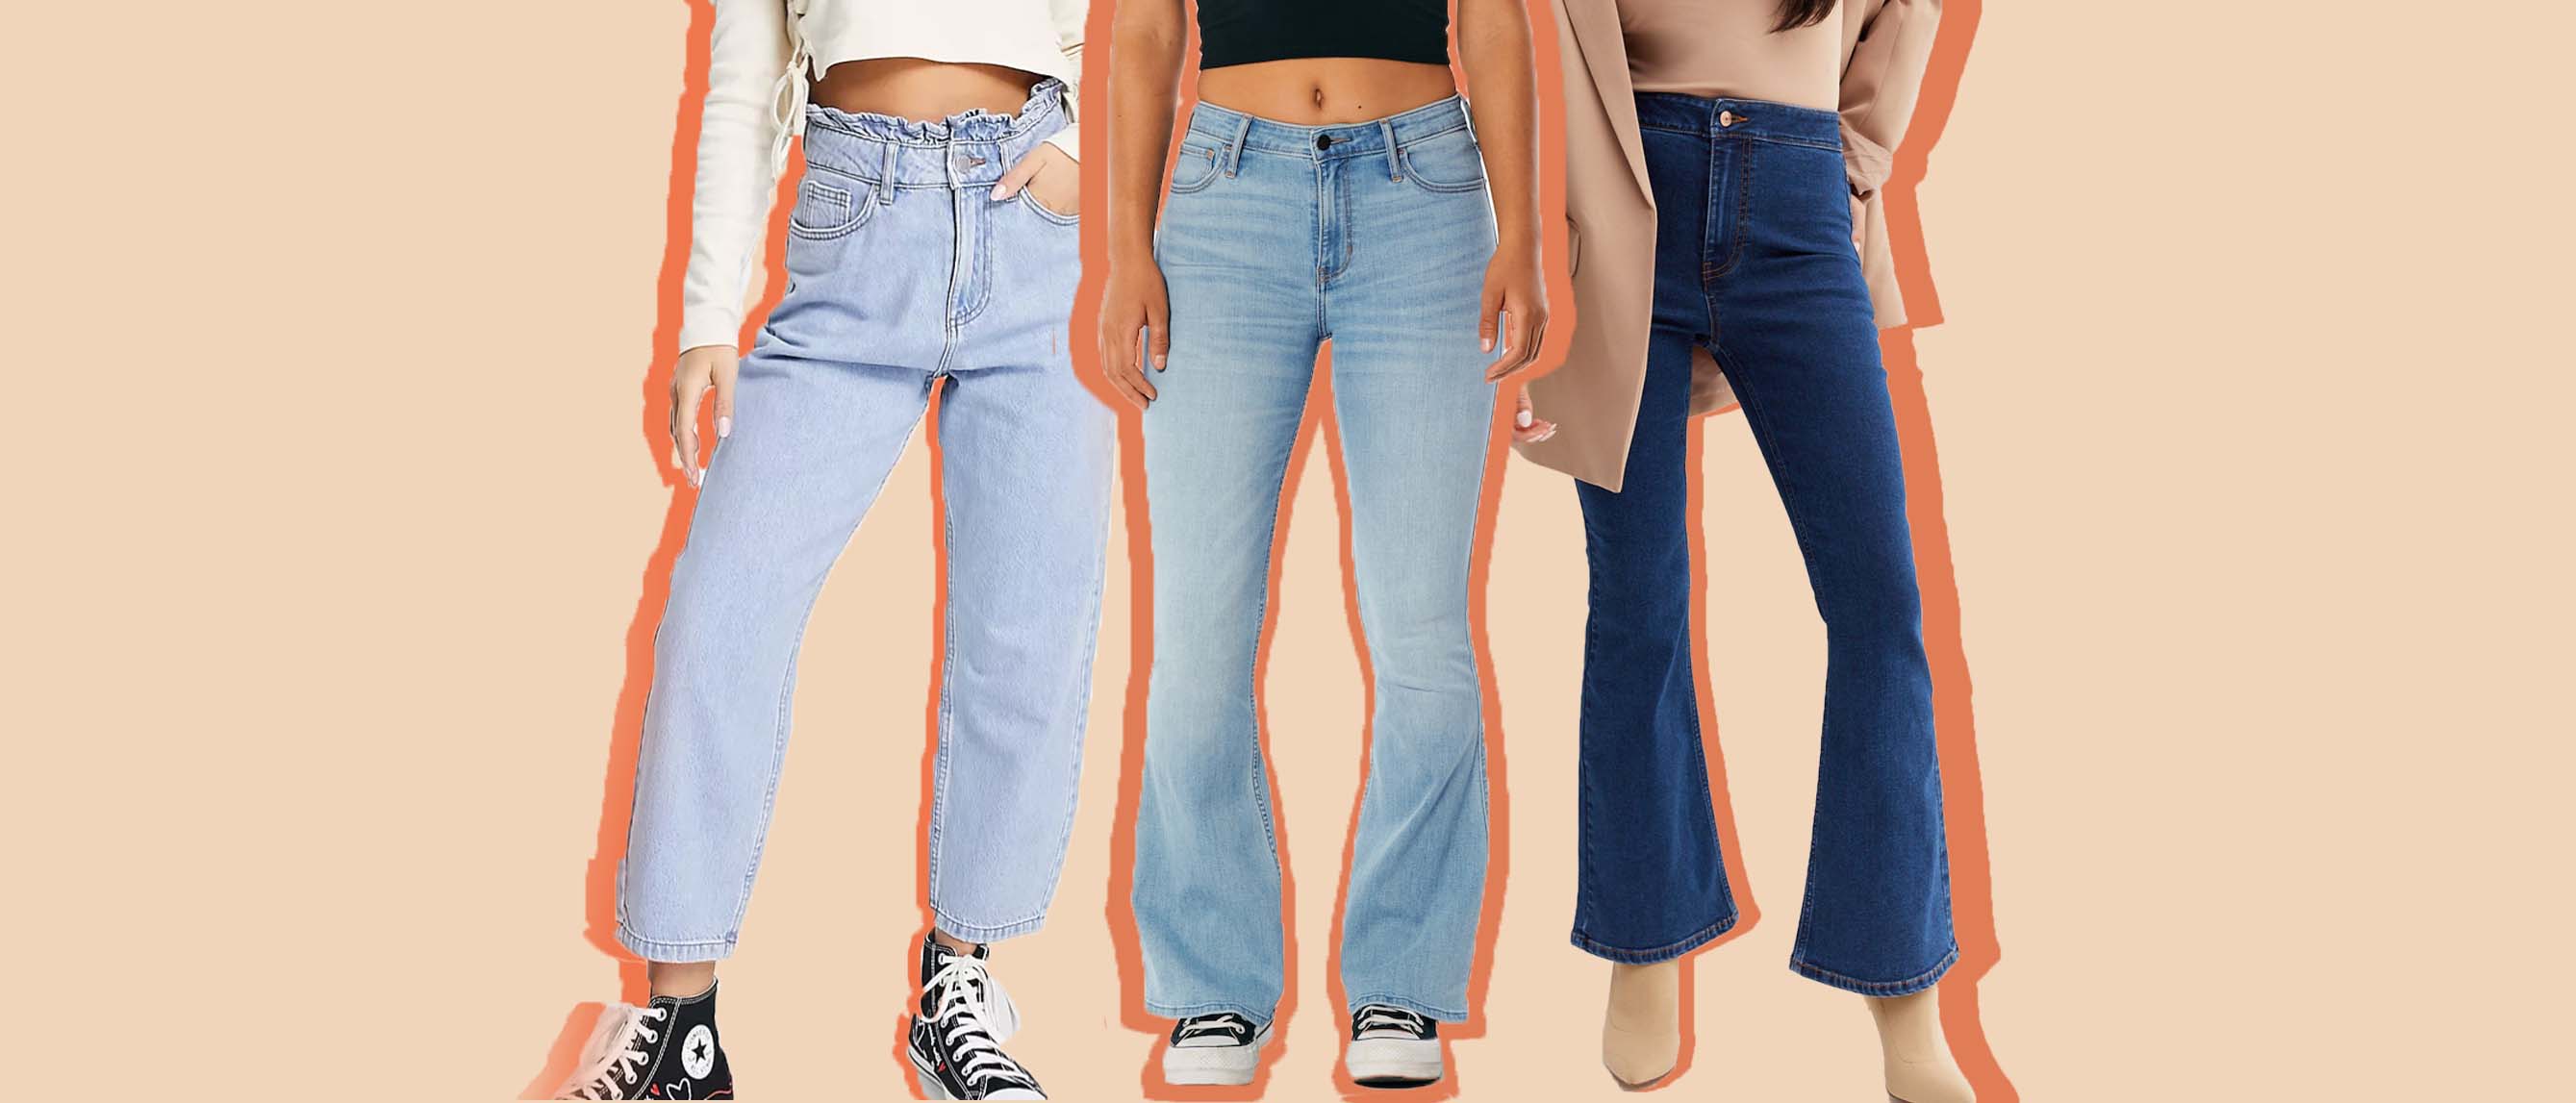 Petite, Jeans, Women